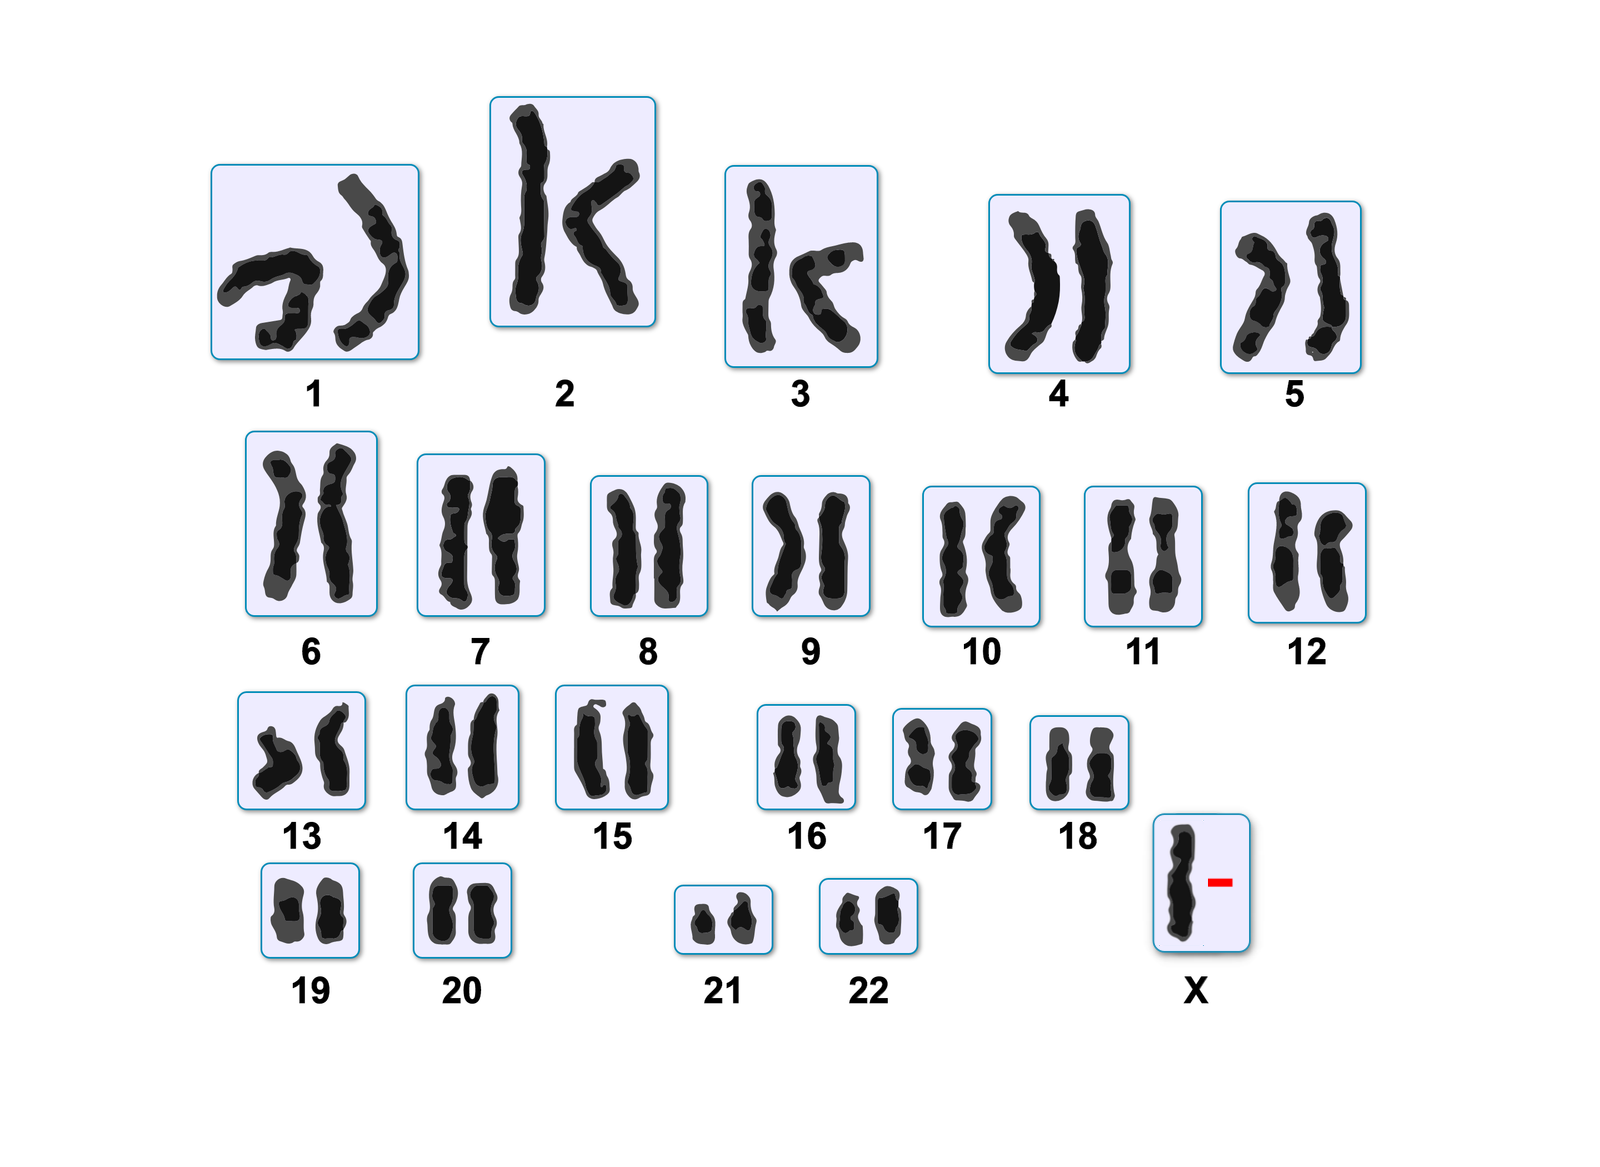  Ilustracja przedstawia kariotyp osoby z zespołem Turnera. Zawiera 22 pary chromosomów, a dodatkowo pojedynczy chromosom oznaczony dużą literą X. 